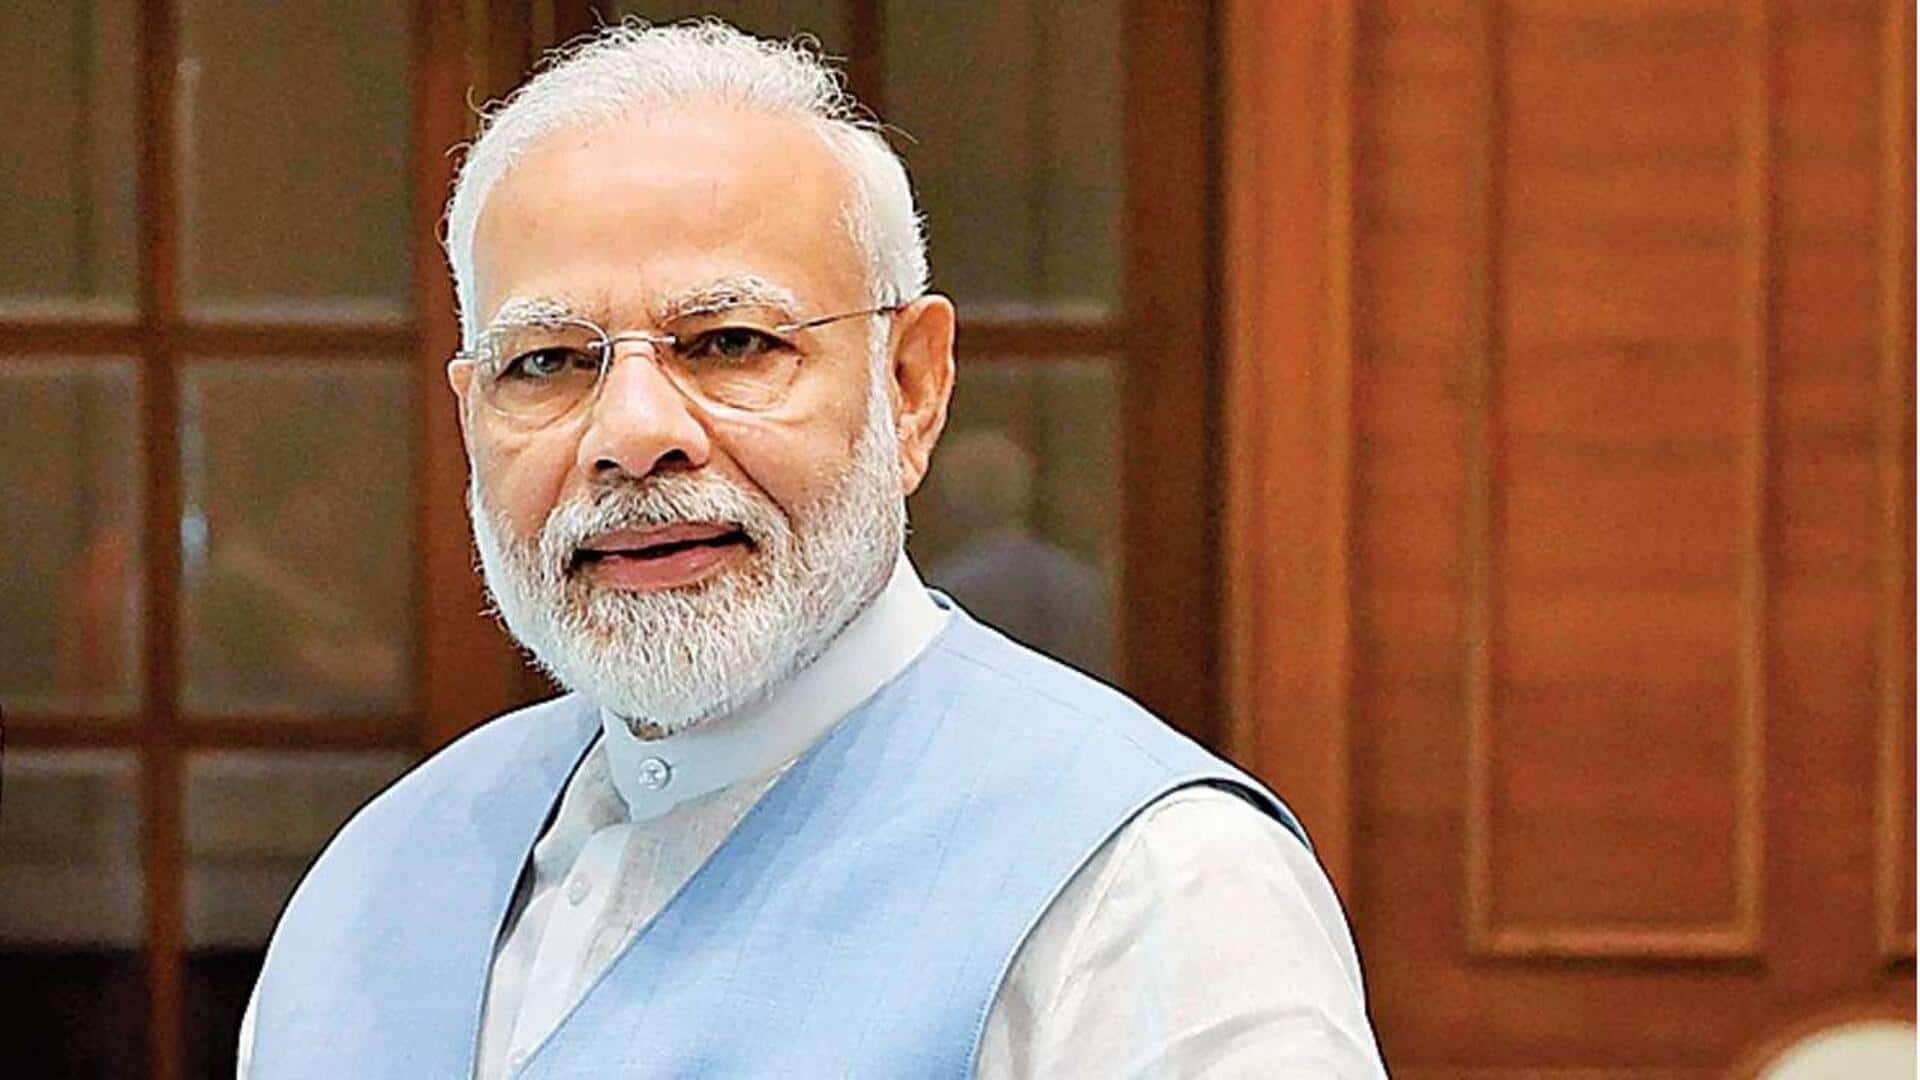 प्रधानमंत्री नरेंद्र मोदी ने ग्रैमी विजेताओं को दी शुभकामनाएं, लिखा- भारत को गर्व है